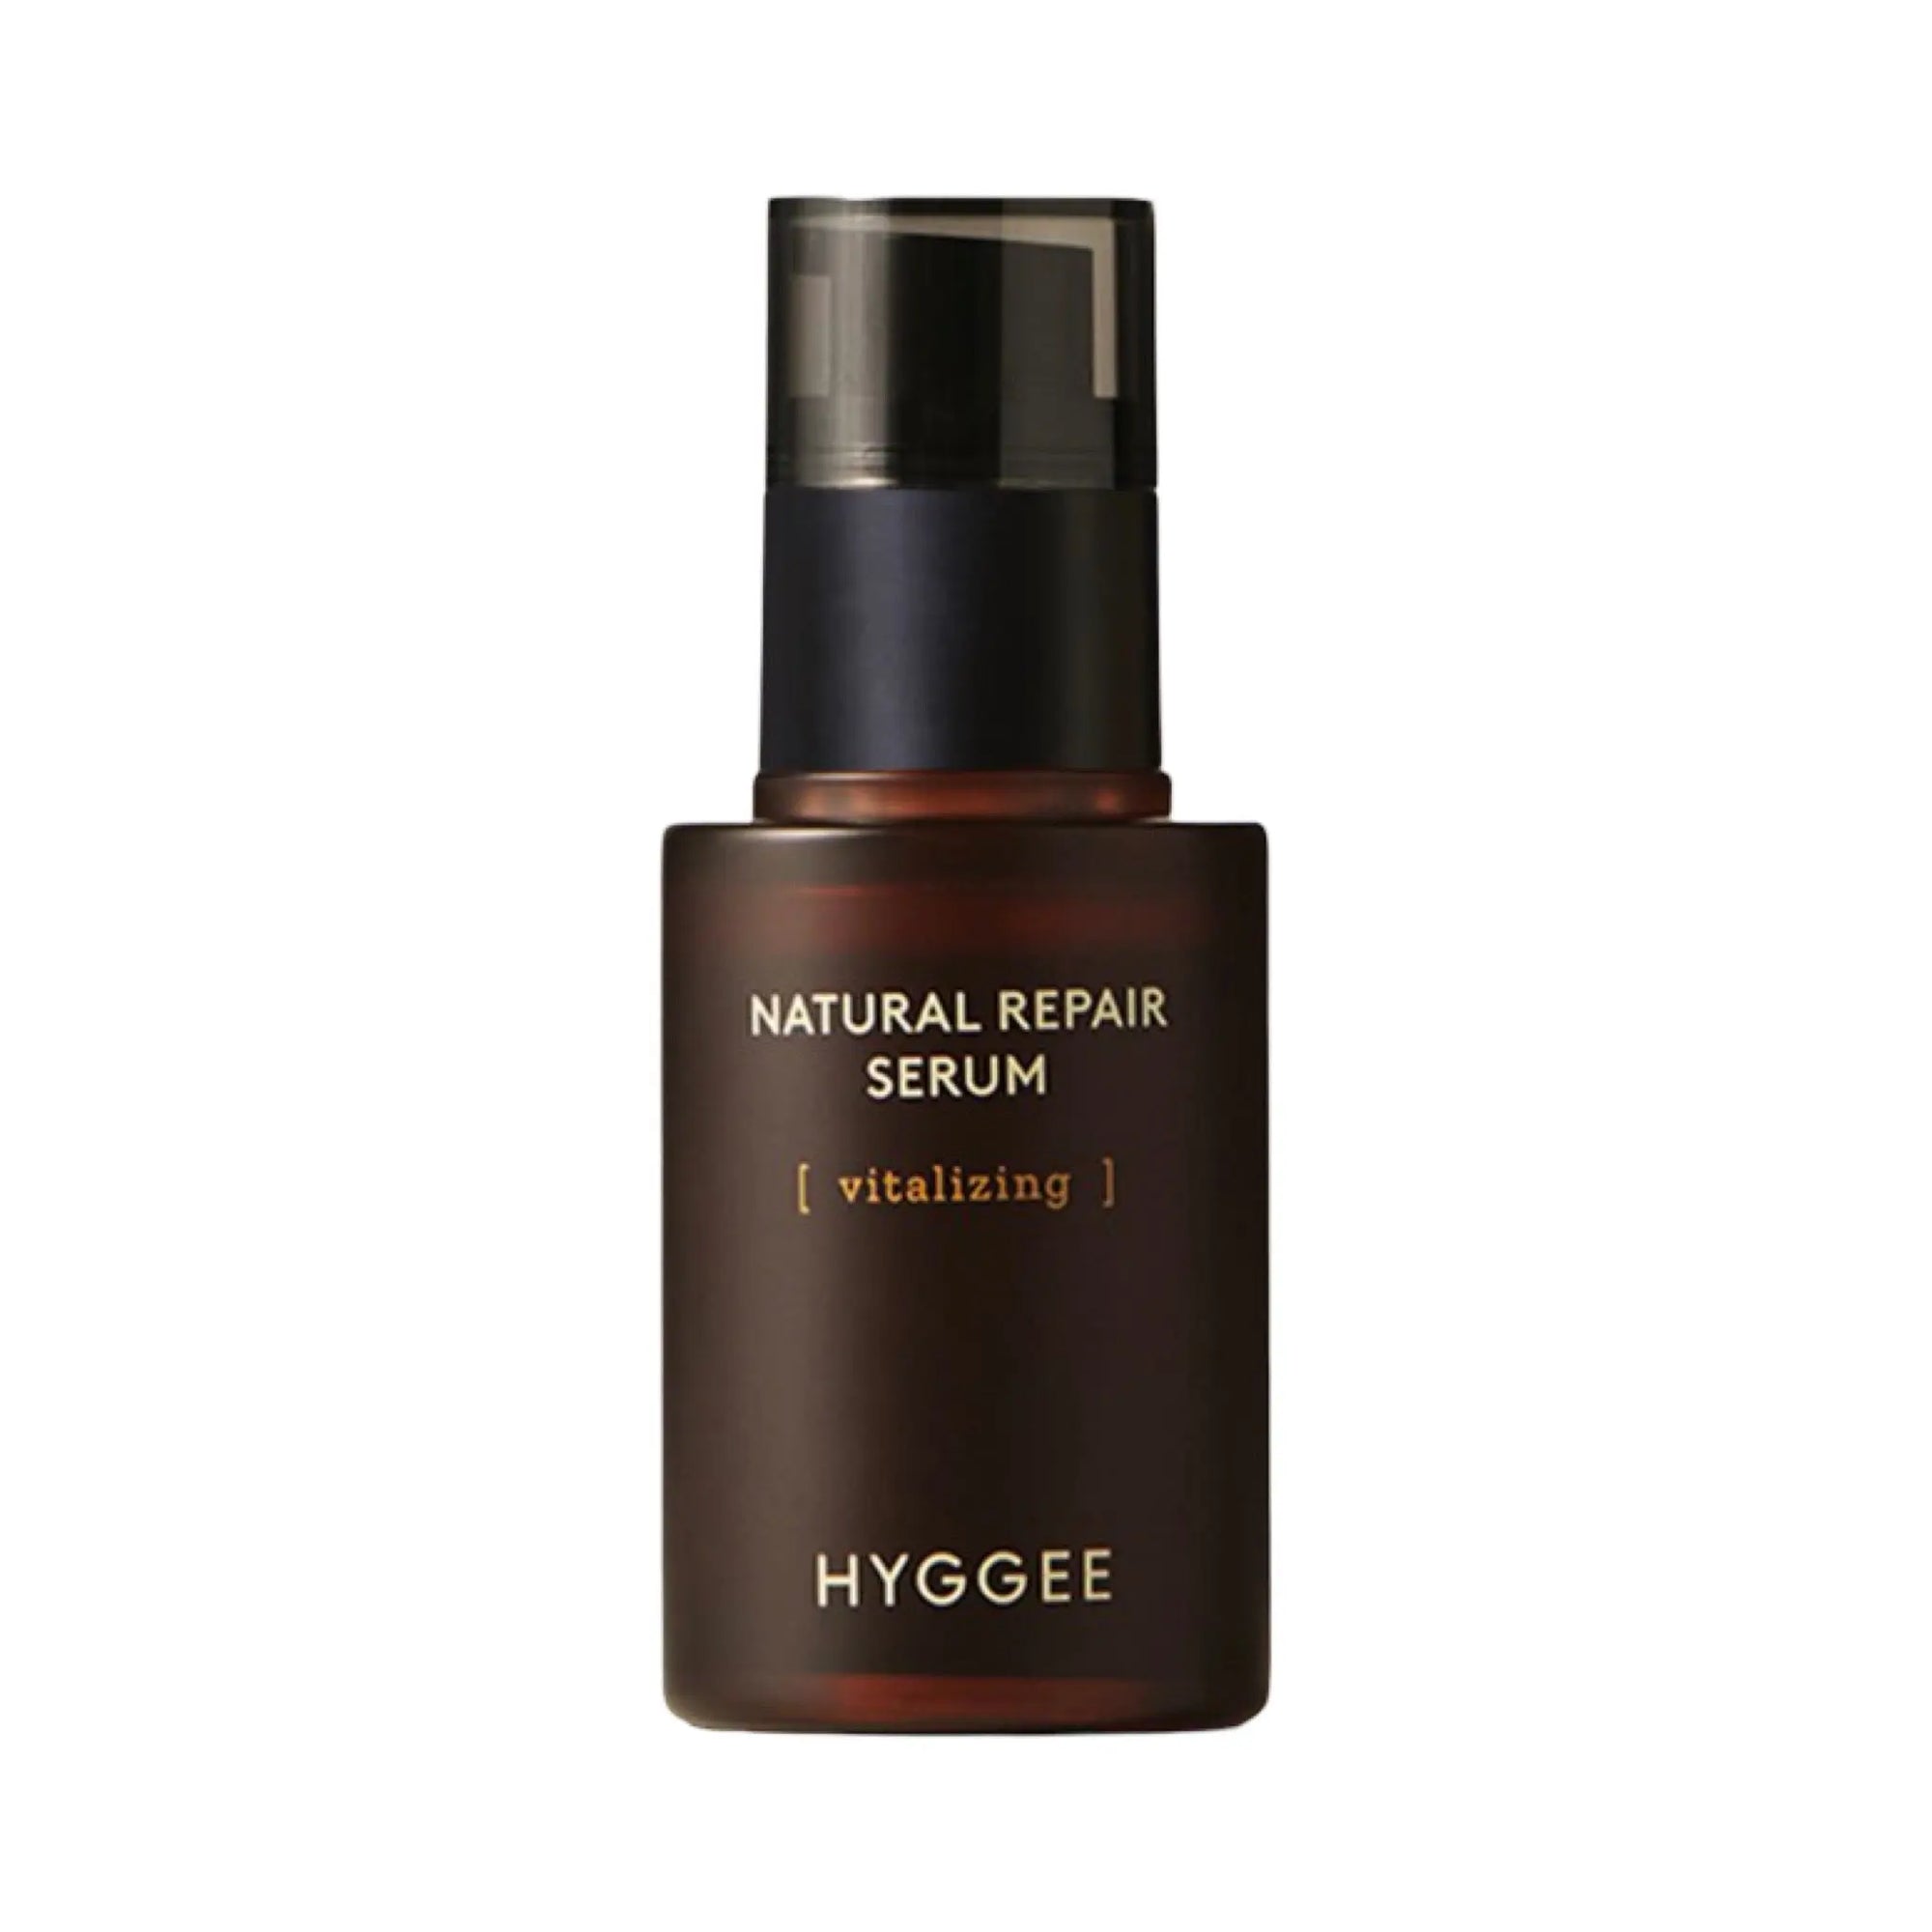 Hyggee - Natural Repair Serum 30mL Hyggee